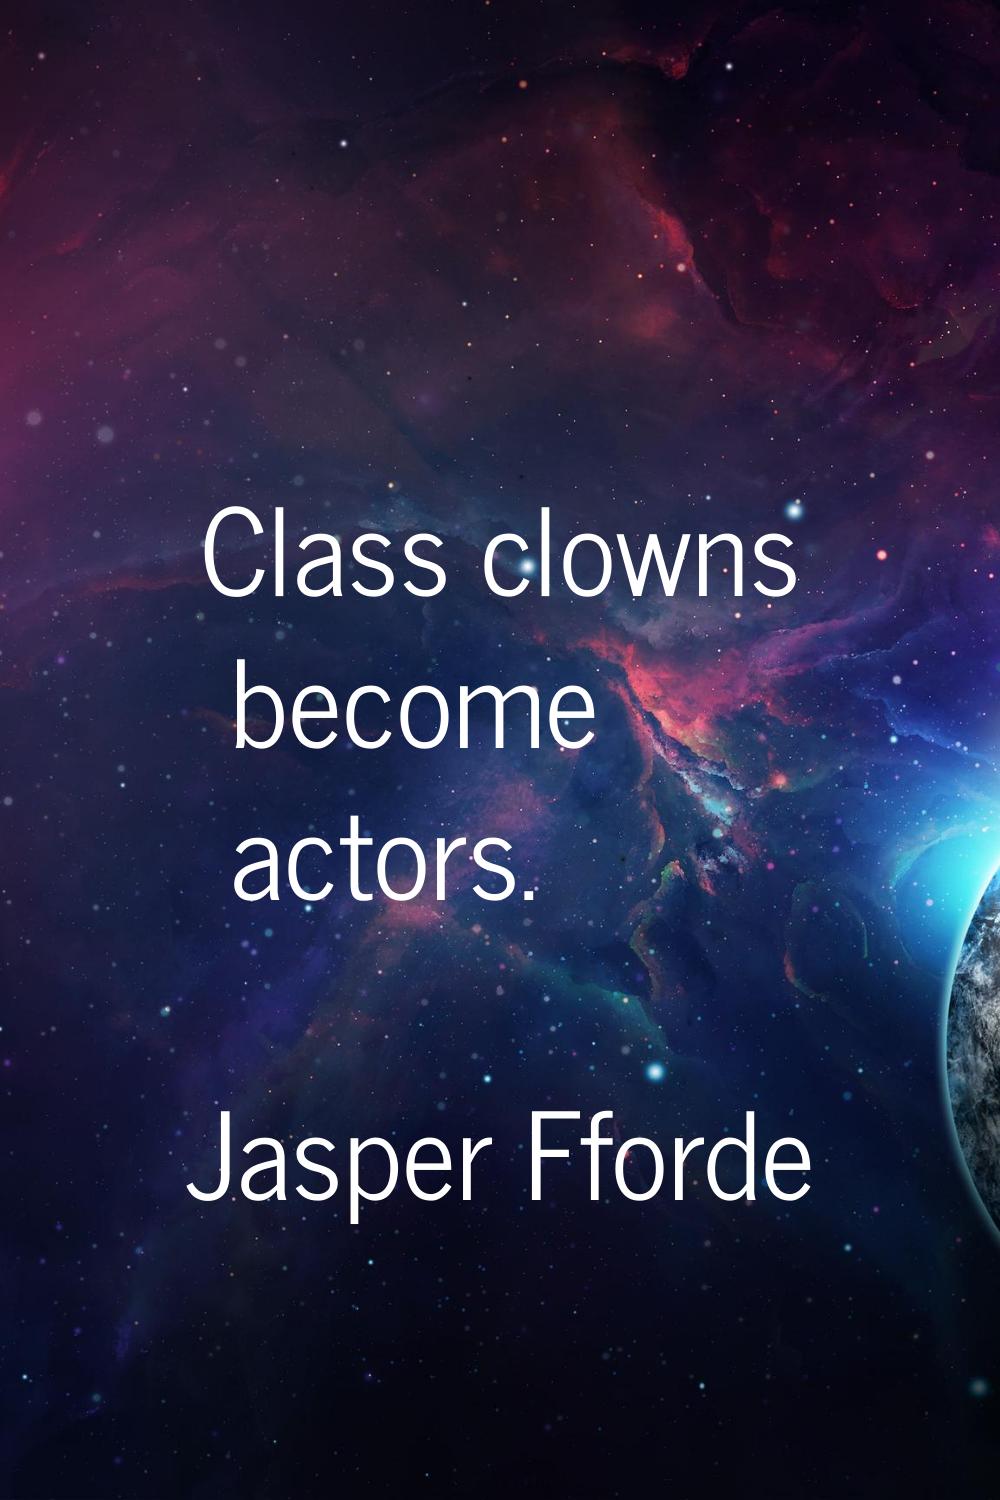 Class clowns become actors.